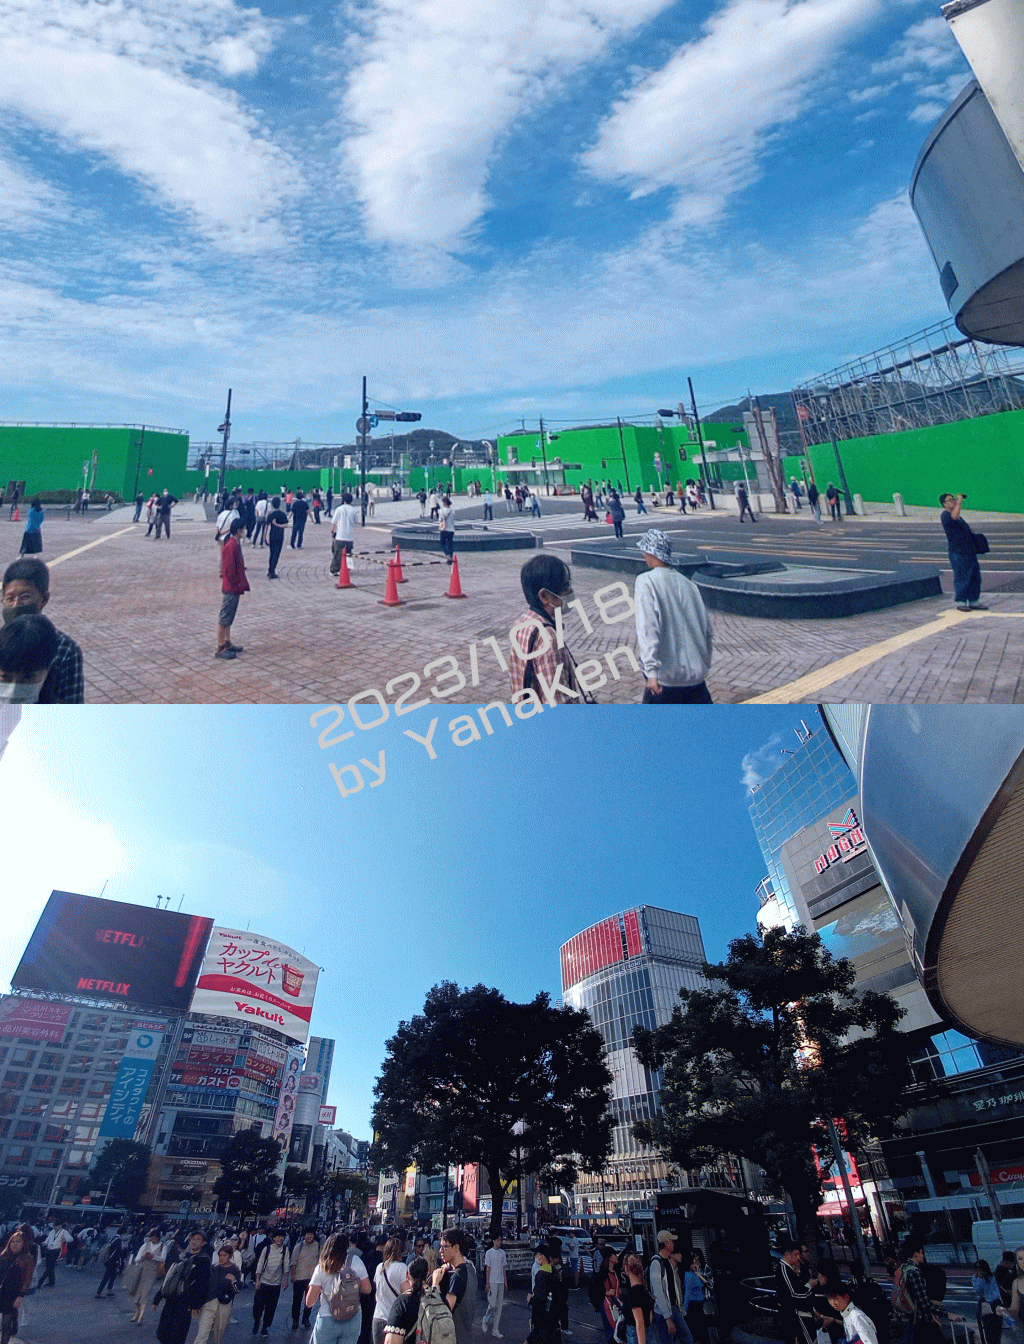 足利スクランブルシティと渋谷スクランブル交差点(2)交番前から道玄坂方向の眺め